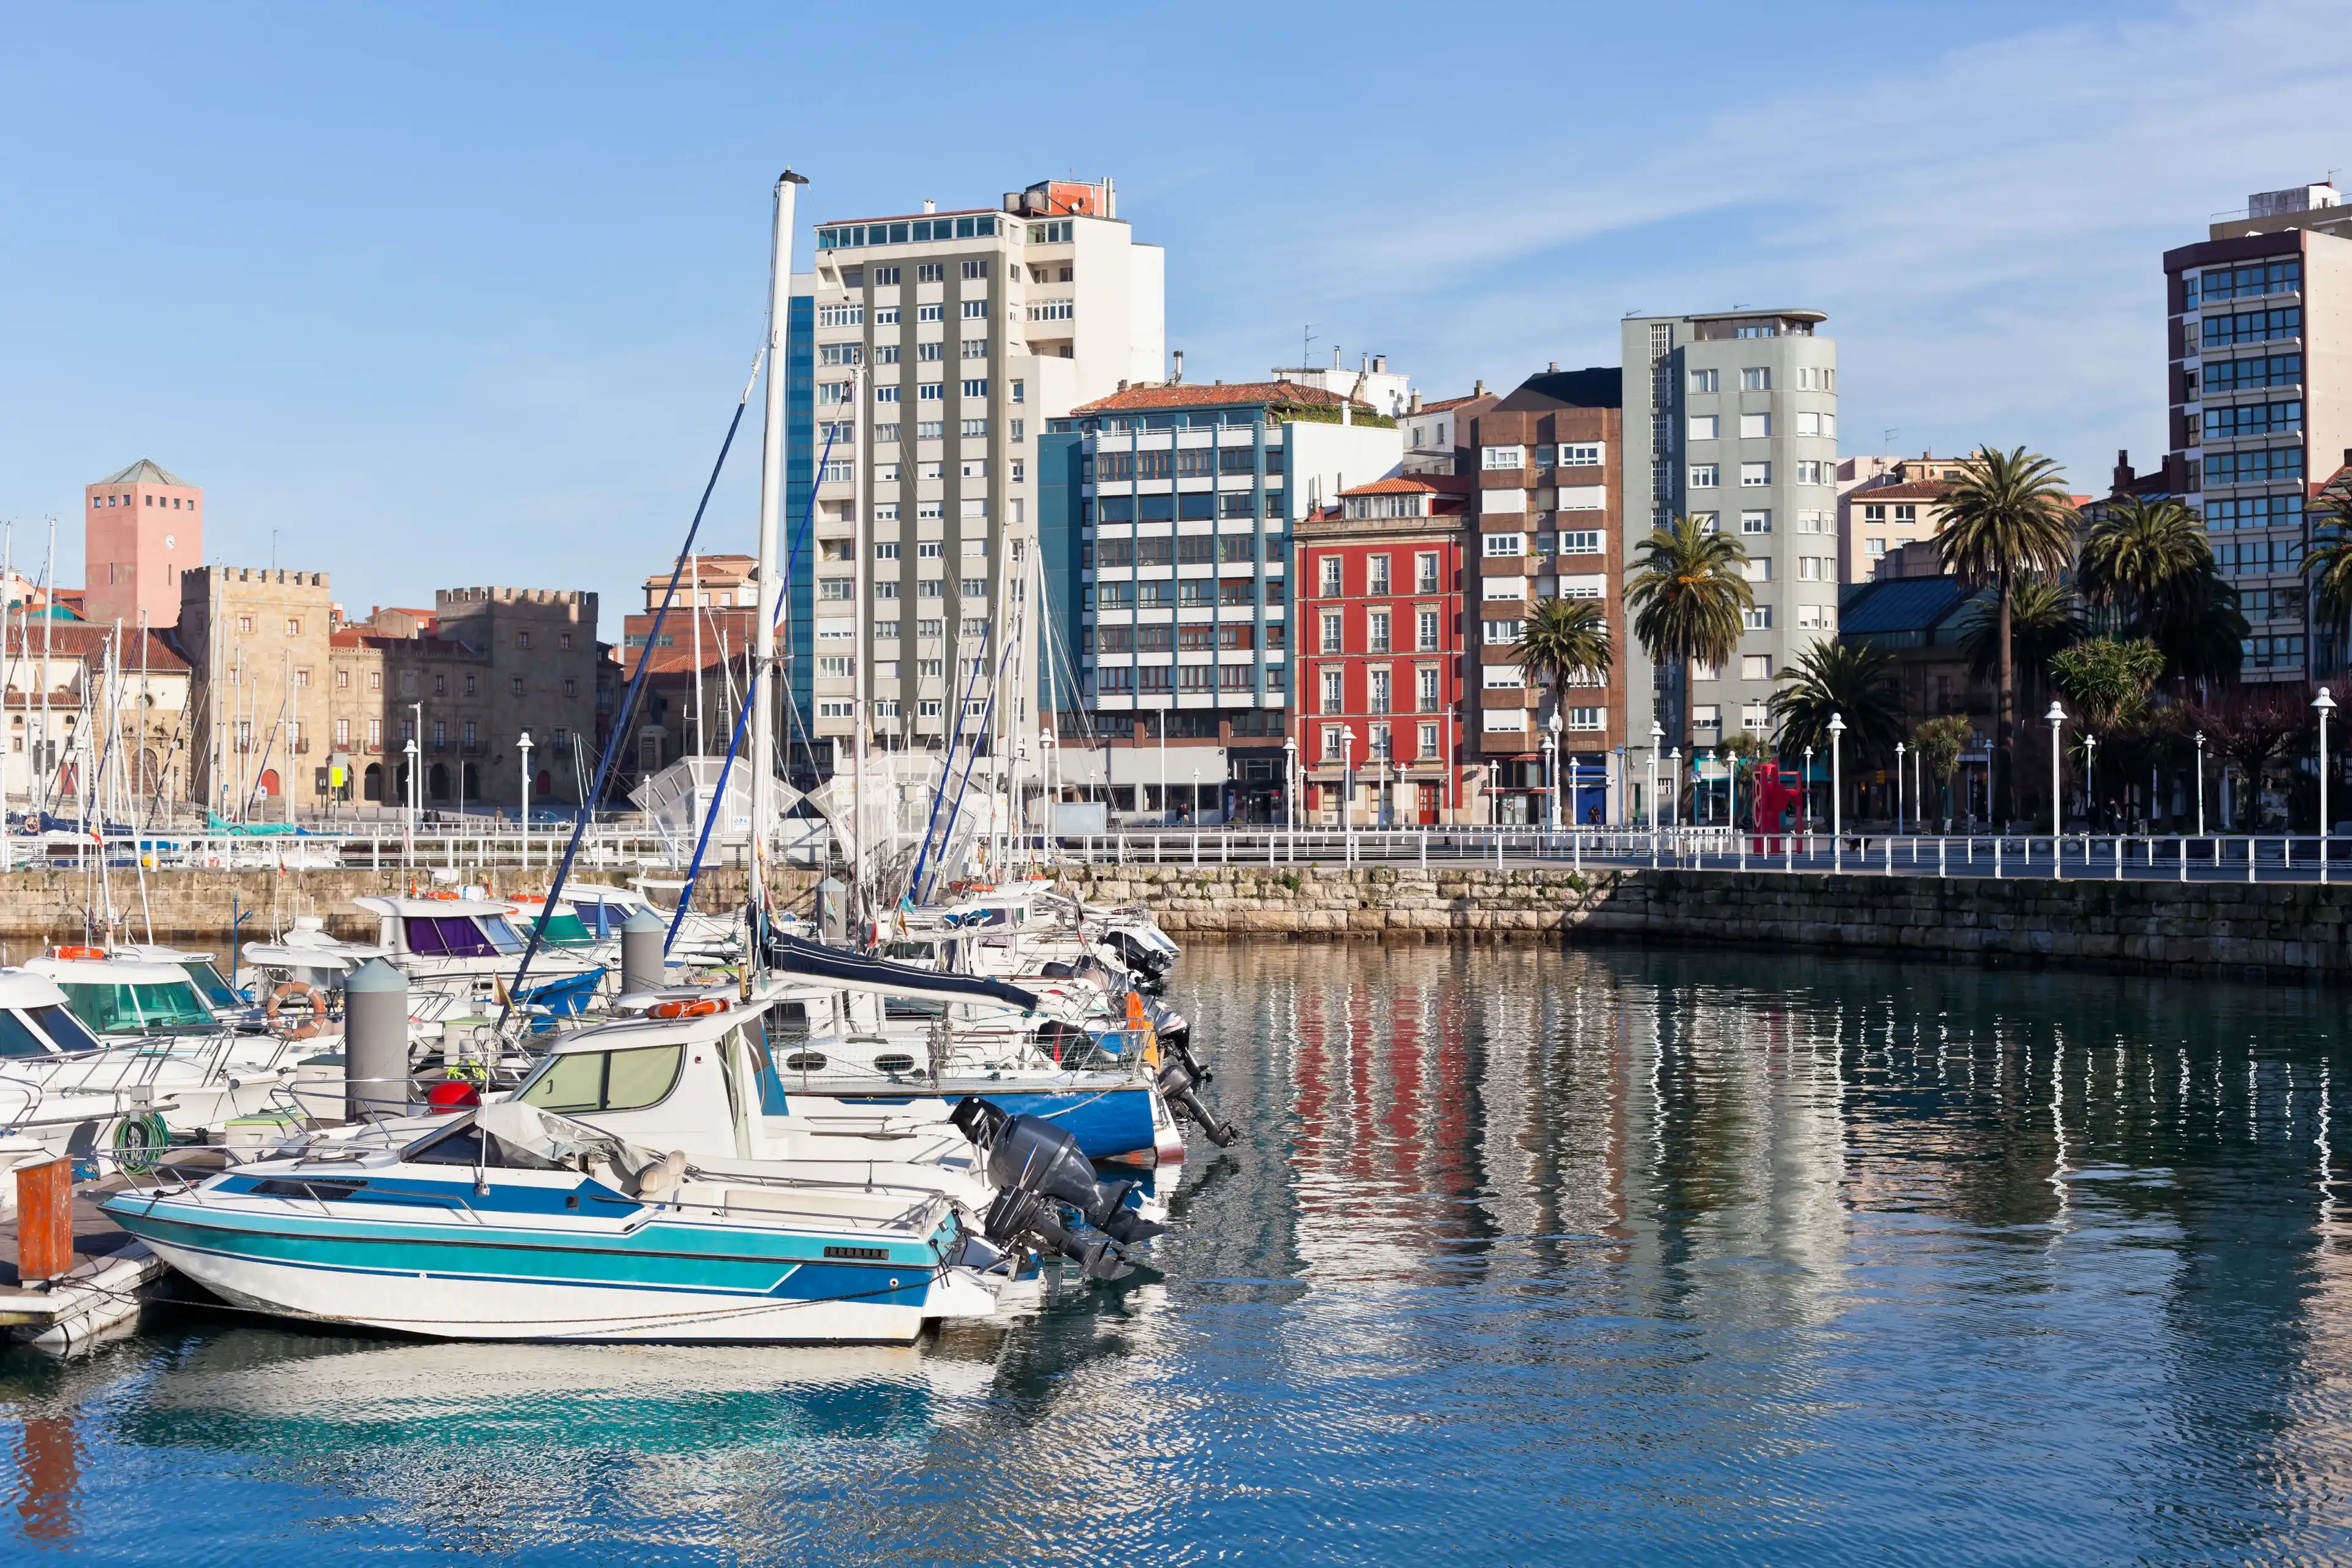 Best Gijón hotels. Cheap hotels in Gijón, Spain